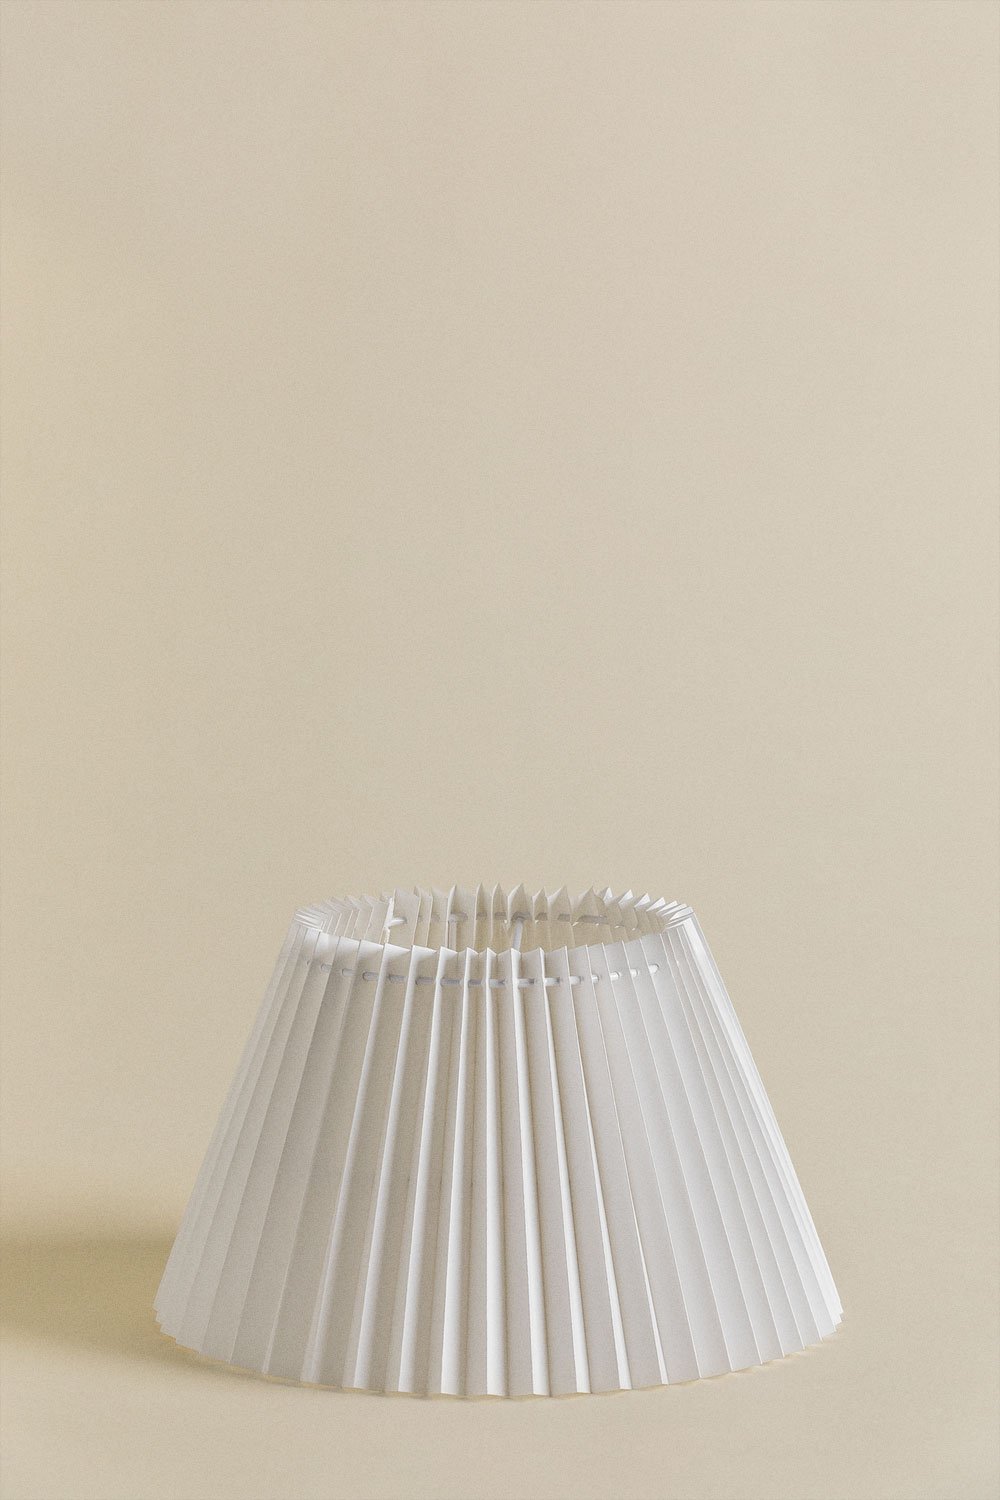 Oguran Lampenschirm aus Reispapier , Galeriebild 1